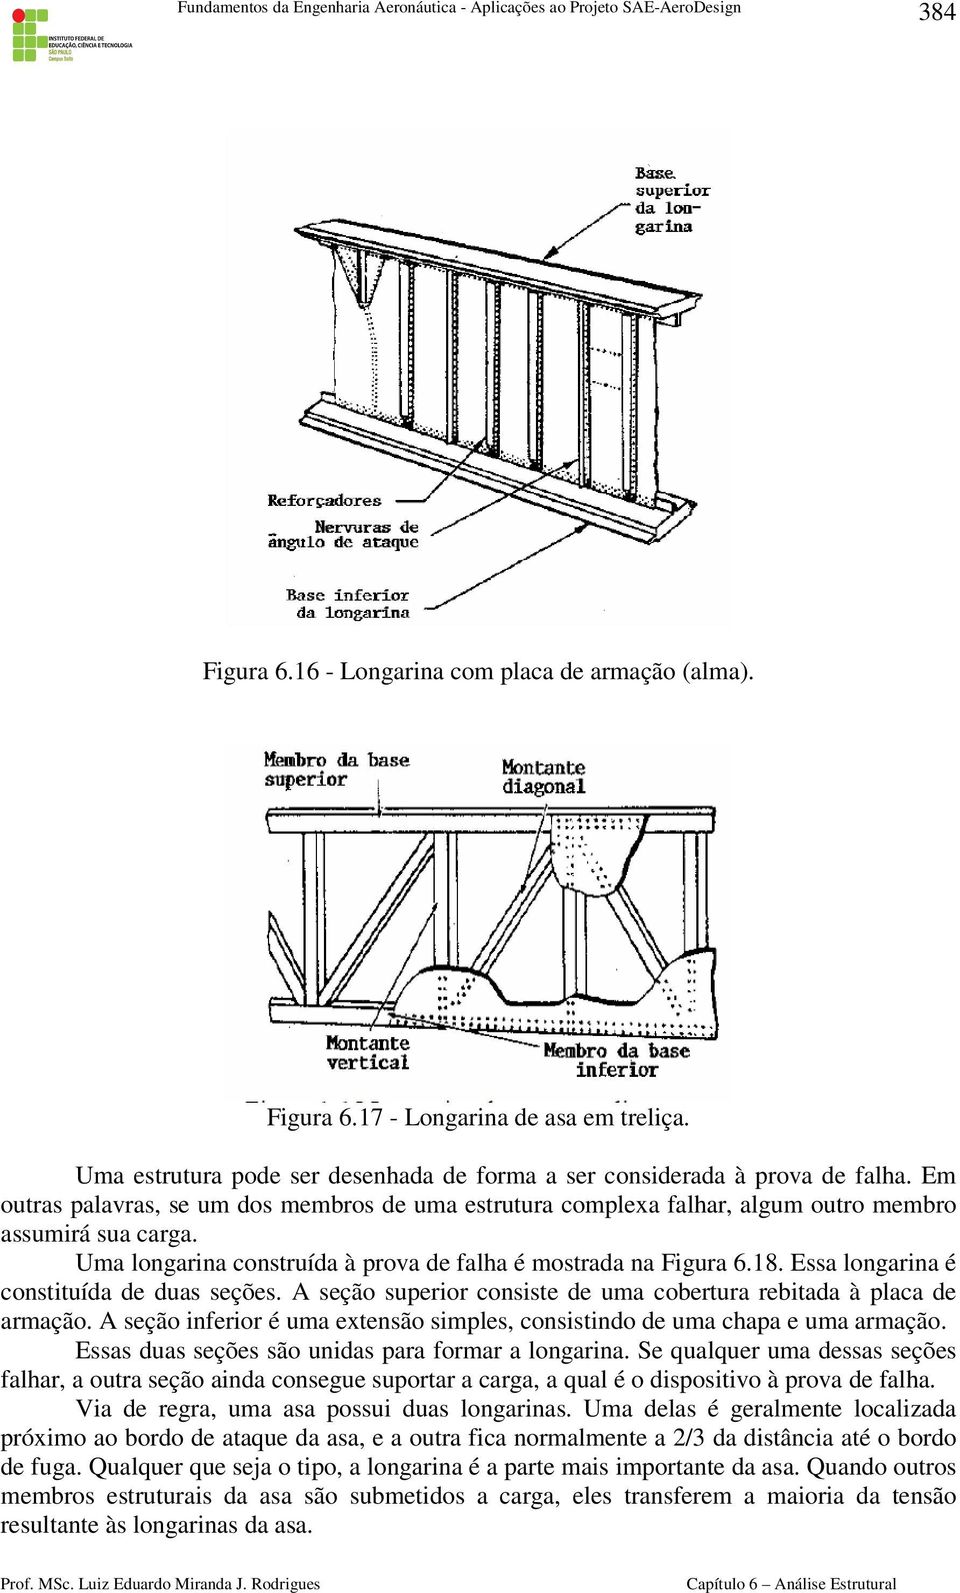 Essa longarina é constituída de duas seções. A seção superior consiste de uma cobertura rebitada à placa de armação. A seção inferior é uma extensão simples, consistindo de uma chapa e uma armação.